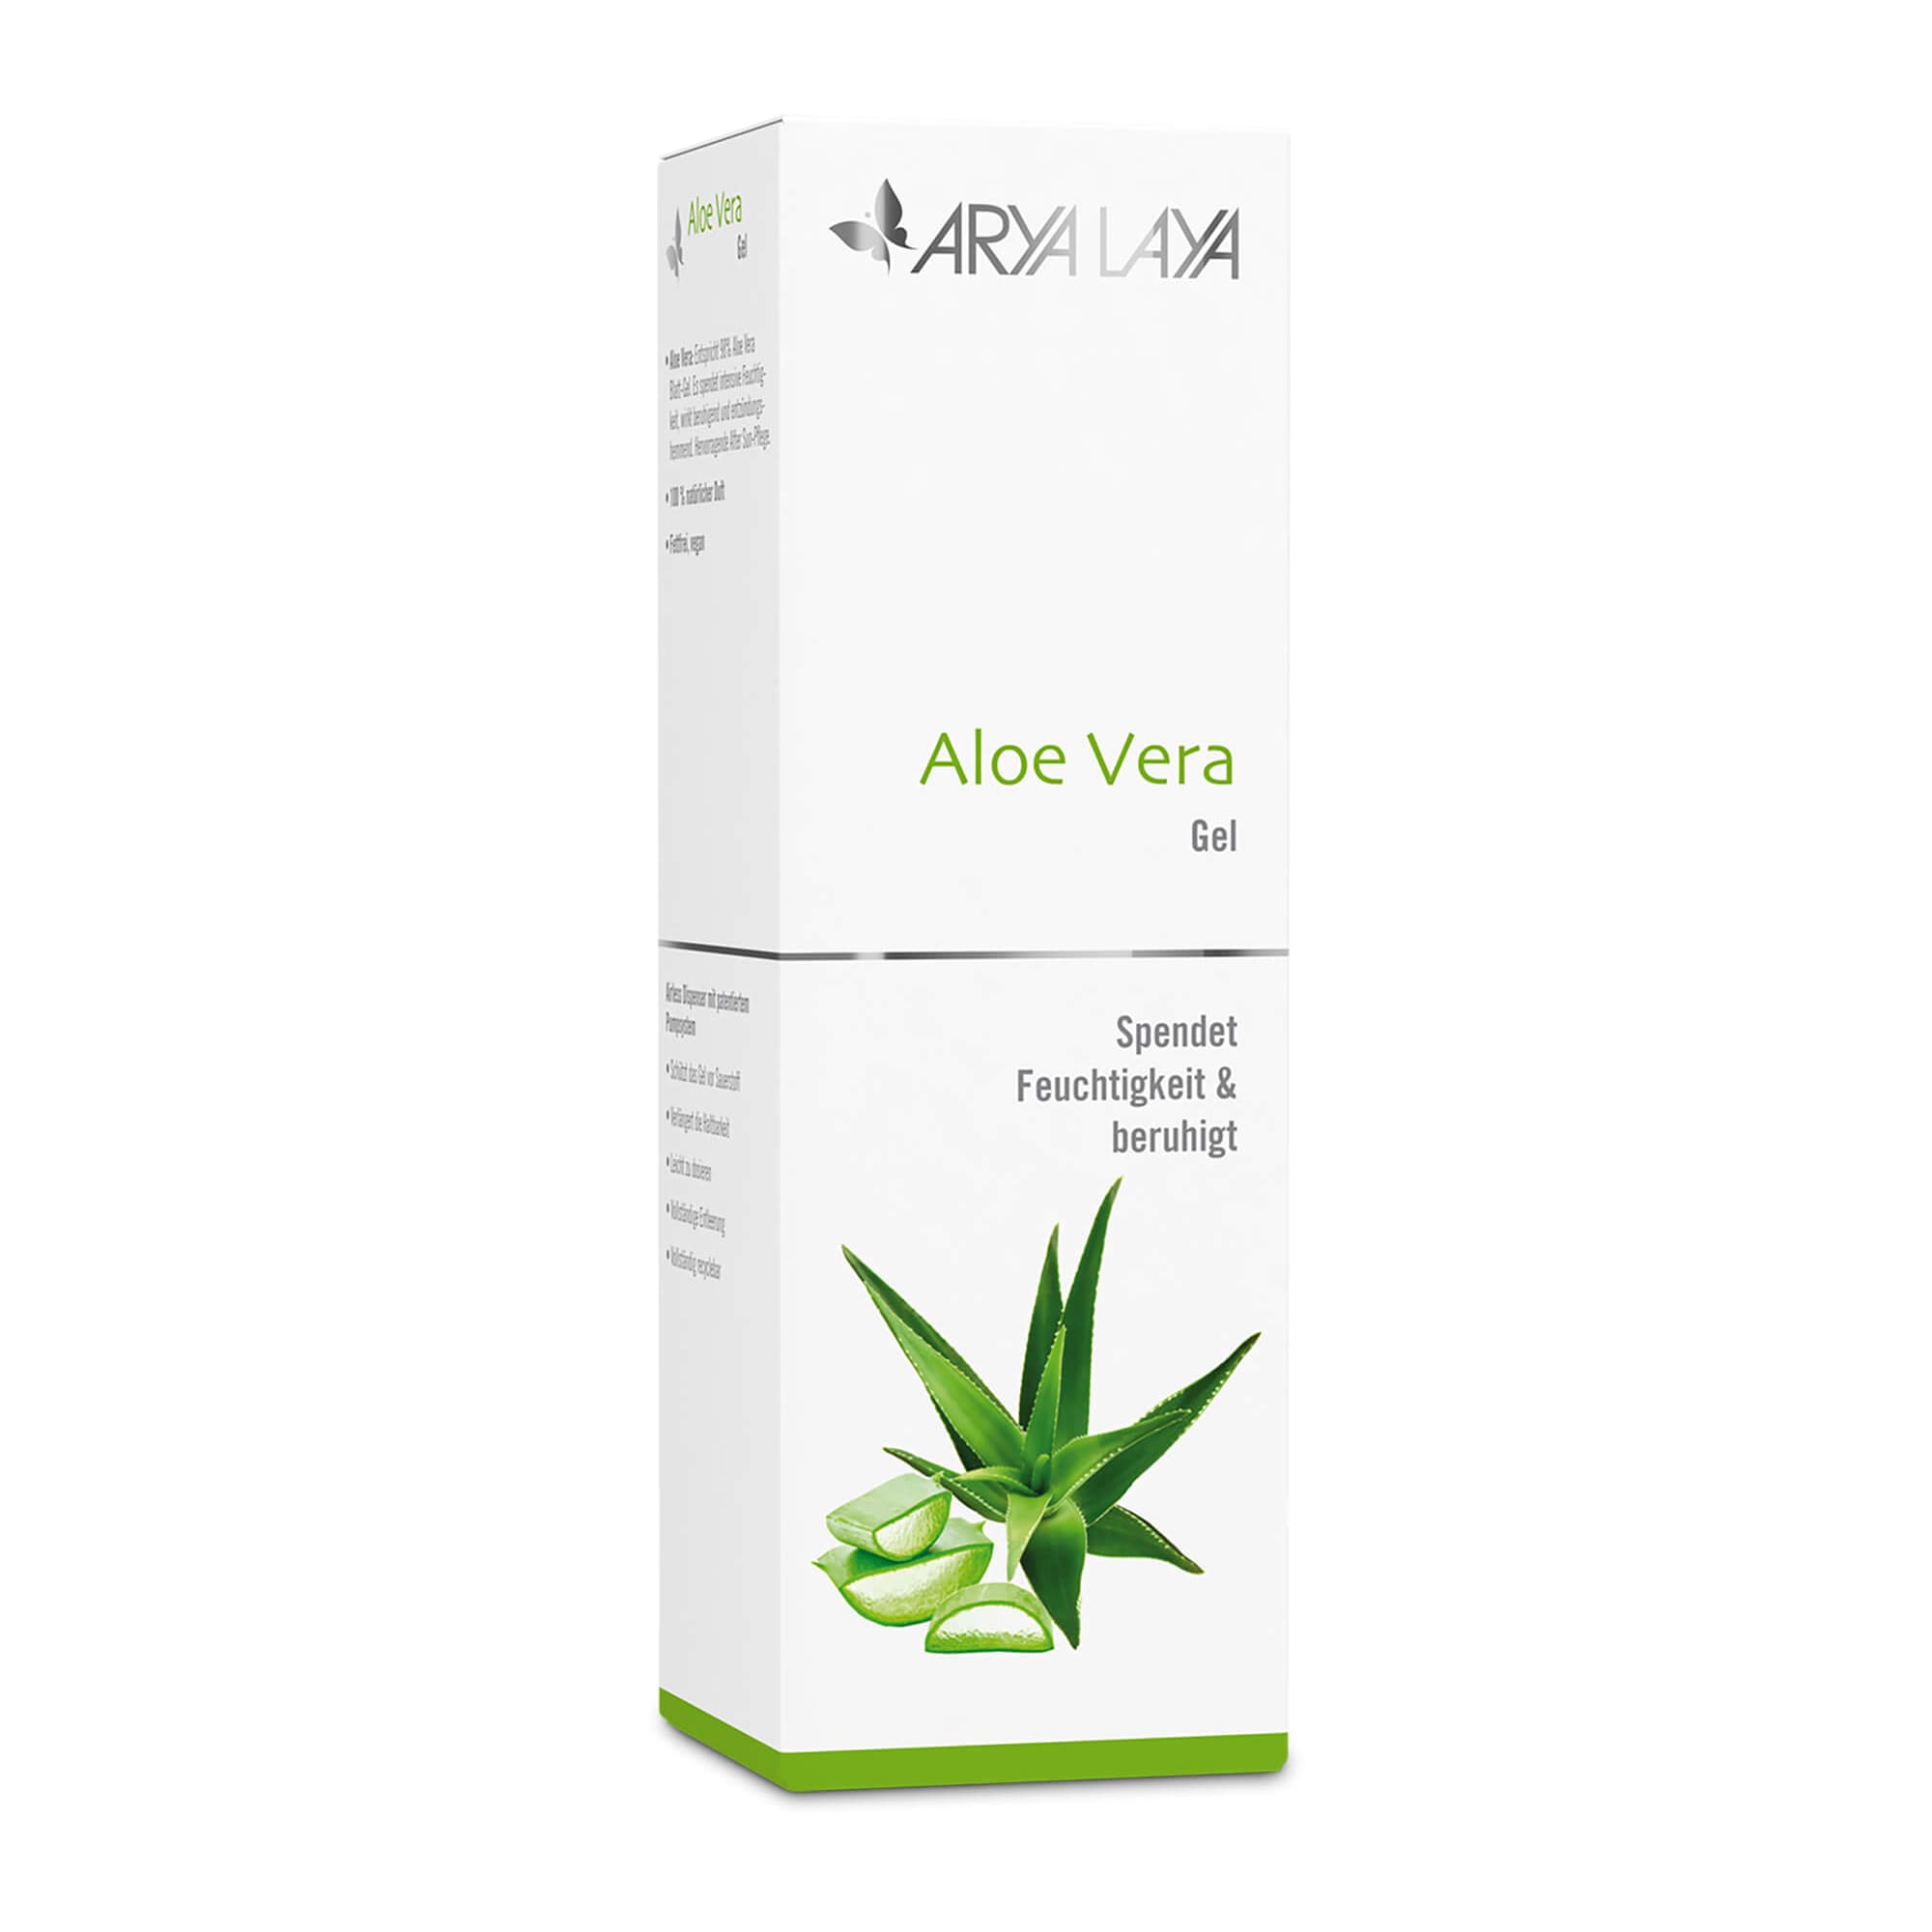 Faltschachtel mit der ARYA LAYA Aloe Vera Gel, 150 ml